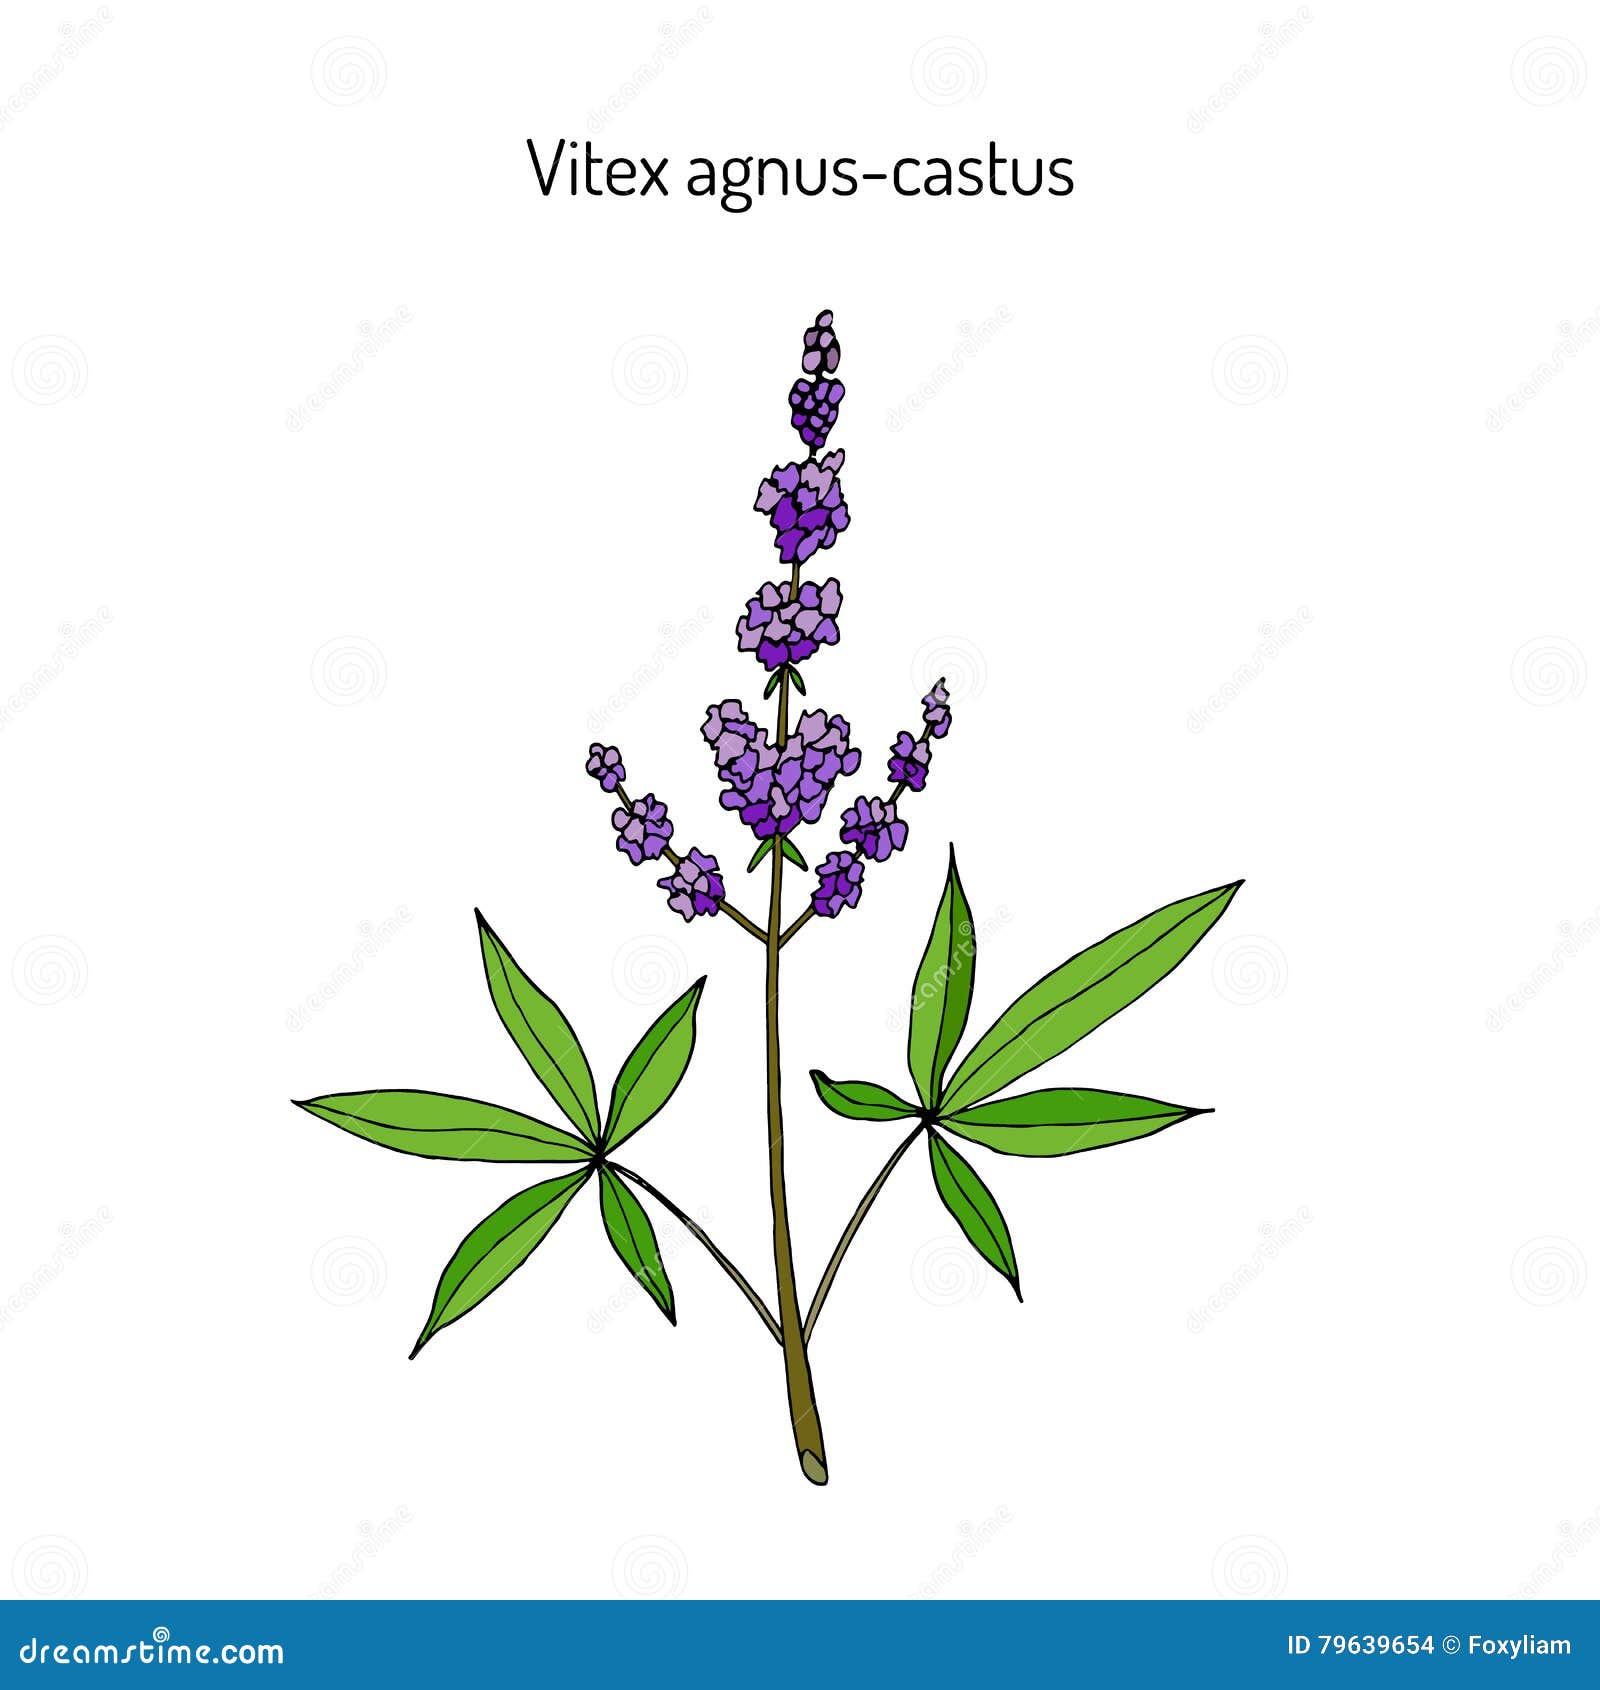 Agnus Castus Vitex Stock Illustrations – 18 Agnus Castus Vitex ...